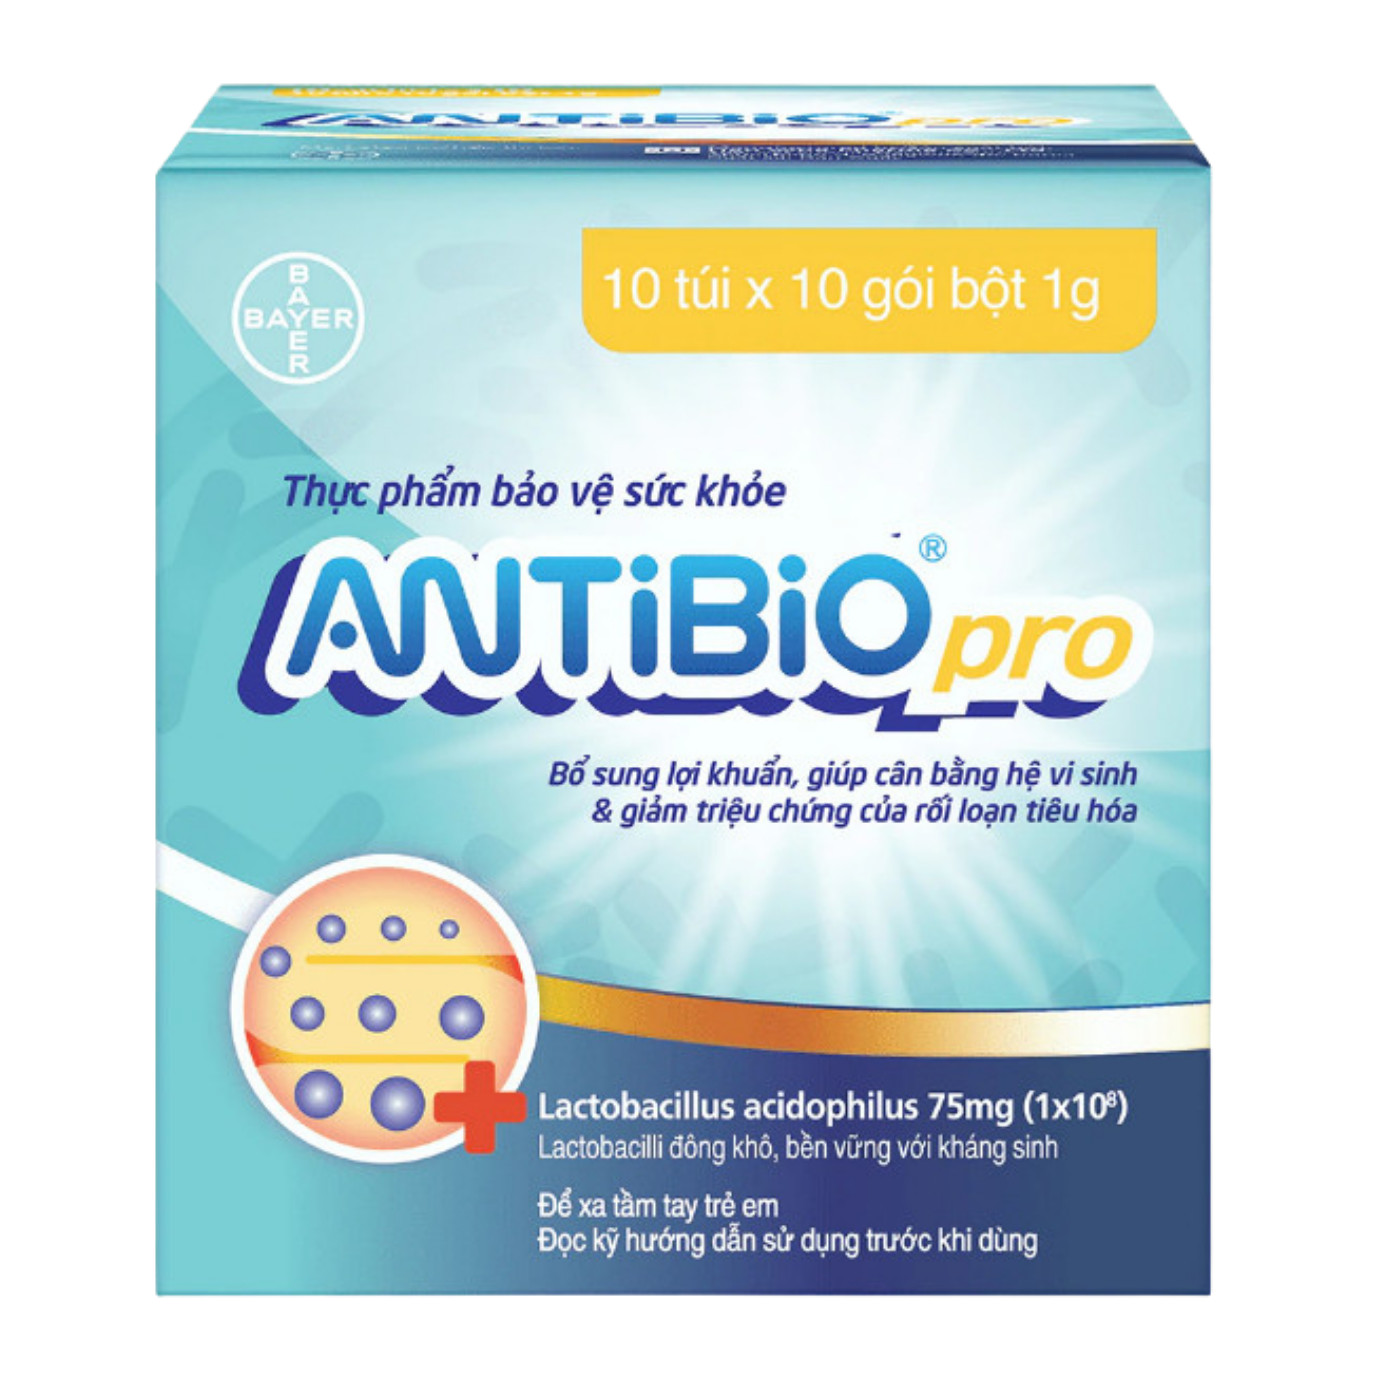 Antibio Pro - Cân bằng hệ vi sinh, trị rối loạn đường ruột hiệu quả